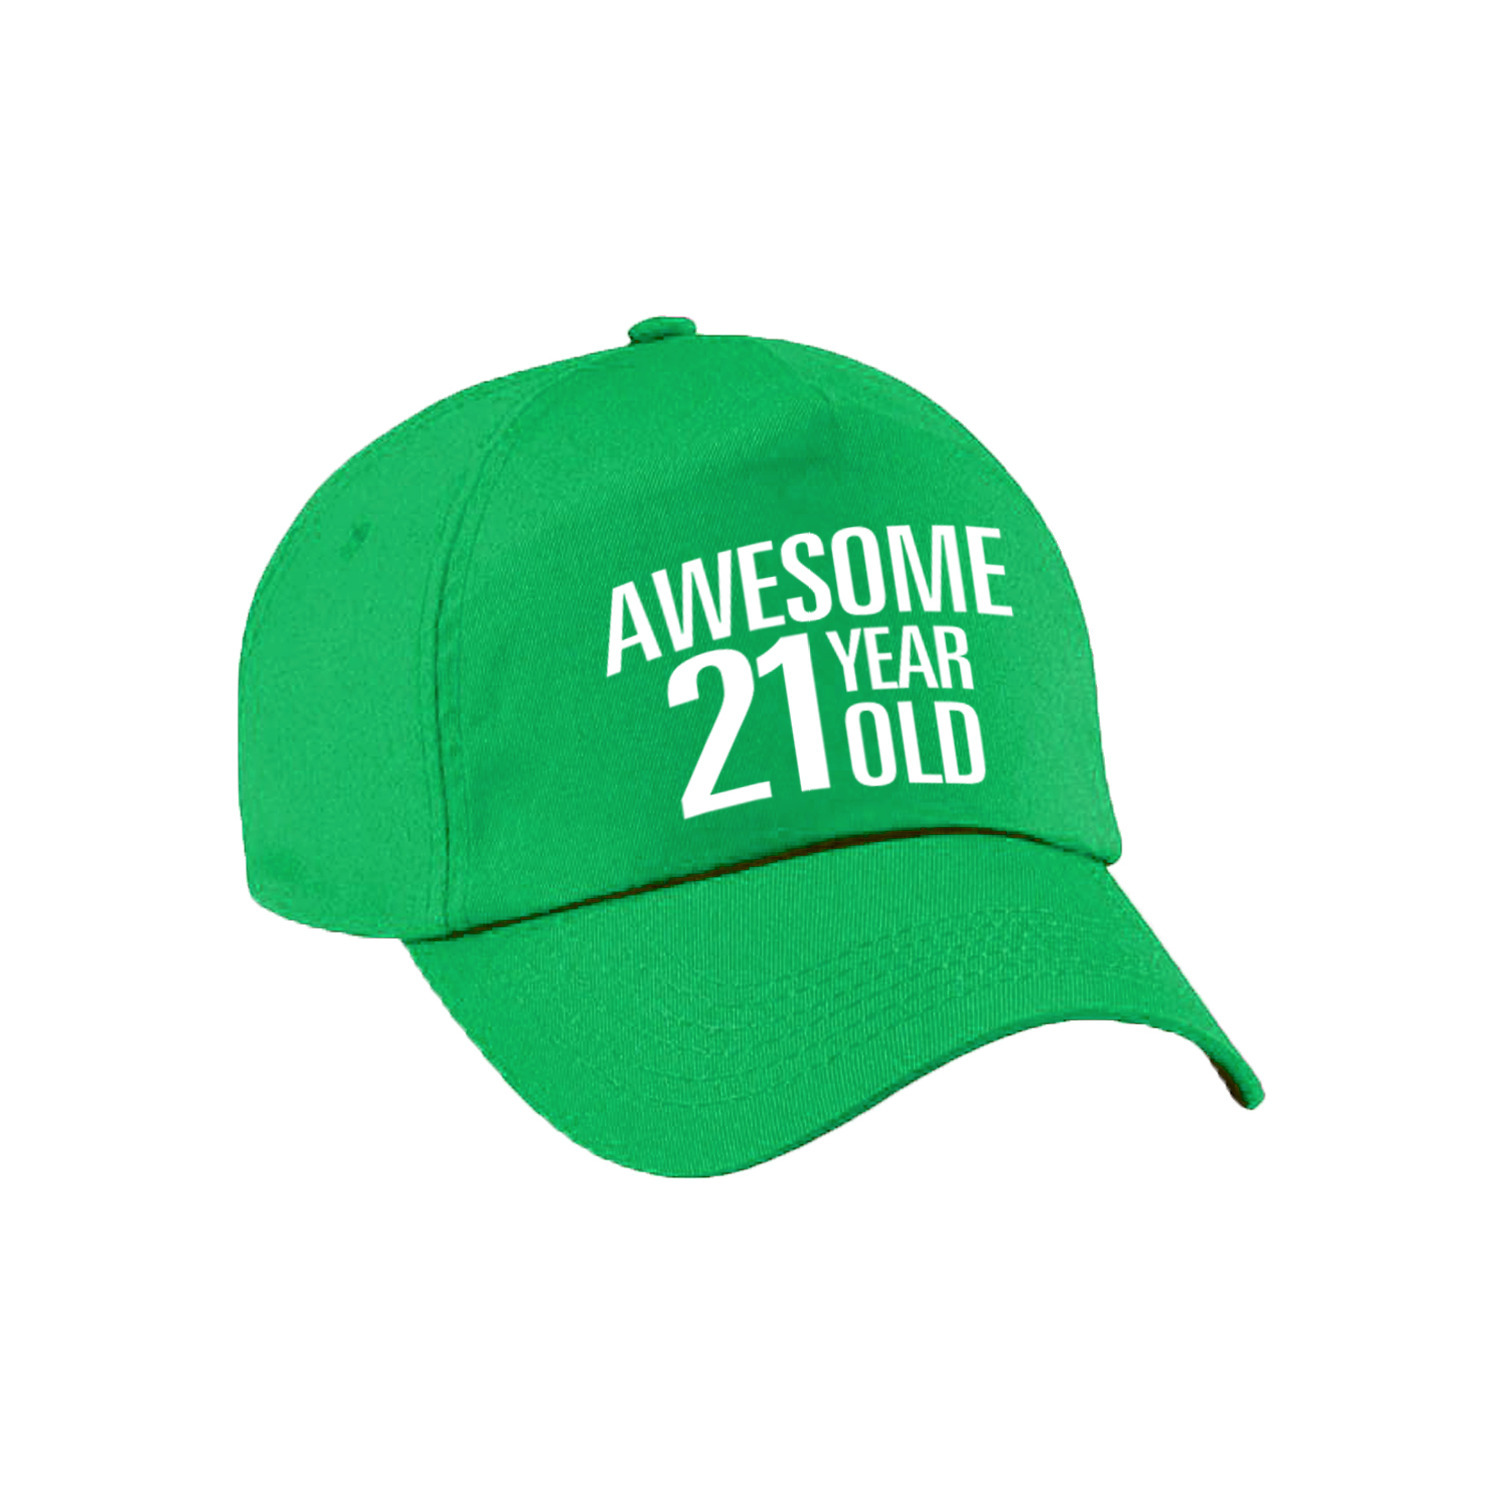 Awesome 21 year old verjaardag pet / cap groen voor dames en heren